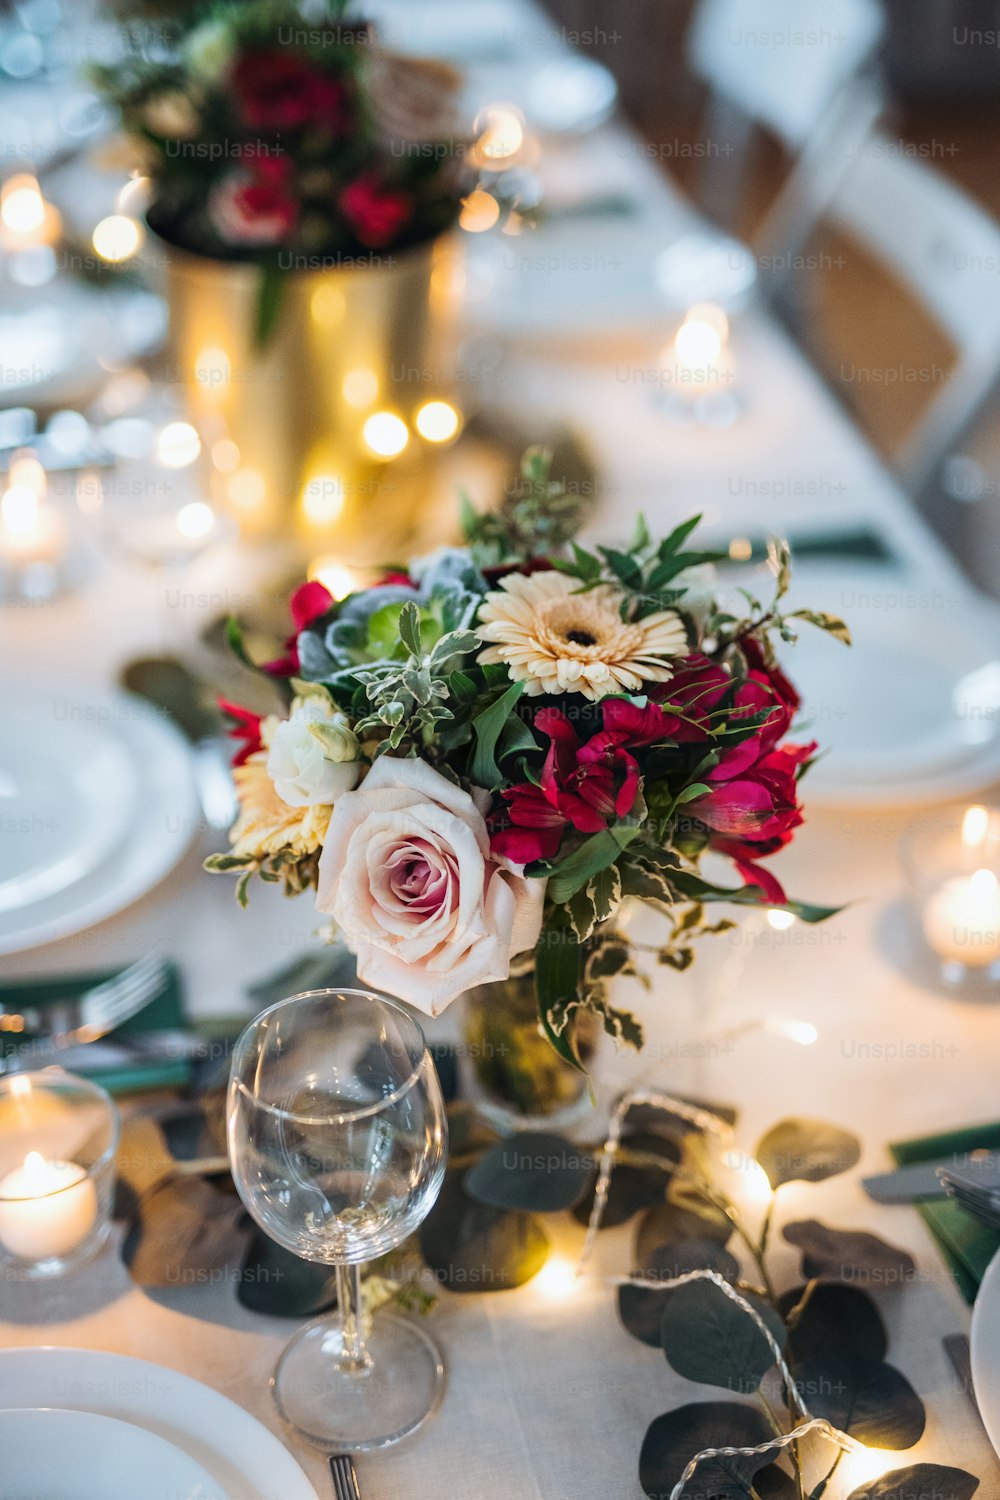 Una tavola apparecchiata per un pasto al chiuso in una stanza durante una festa, un matrimonio o una festa di famiglia.